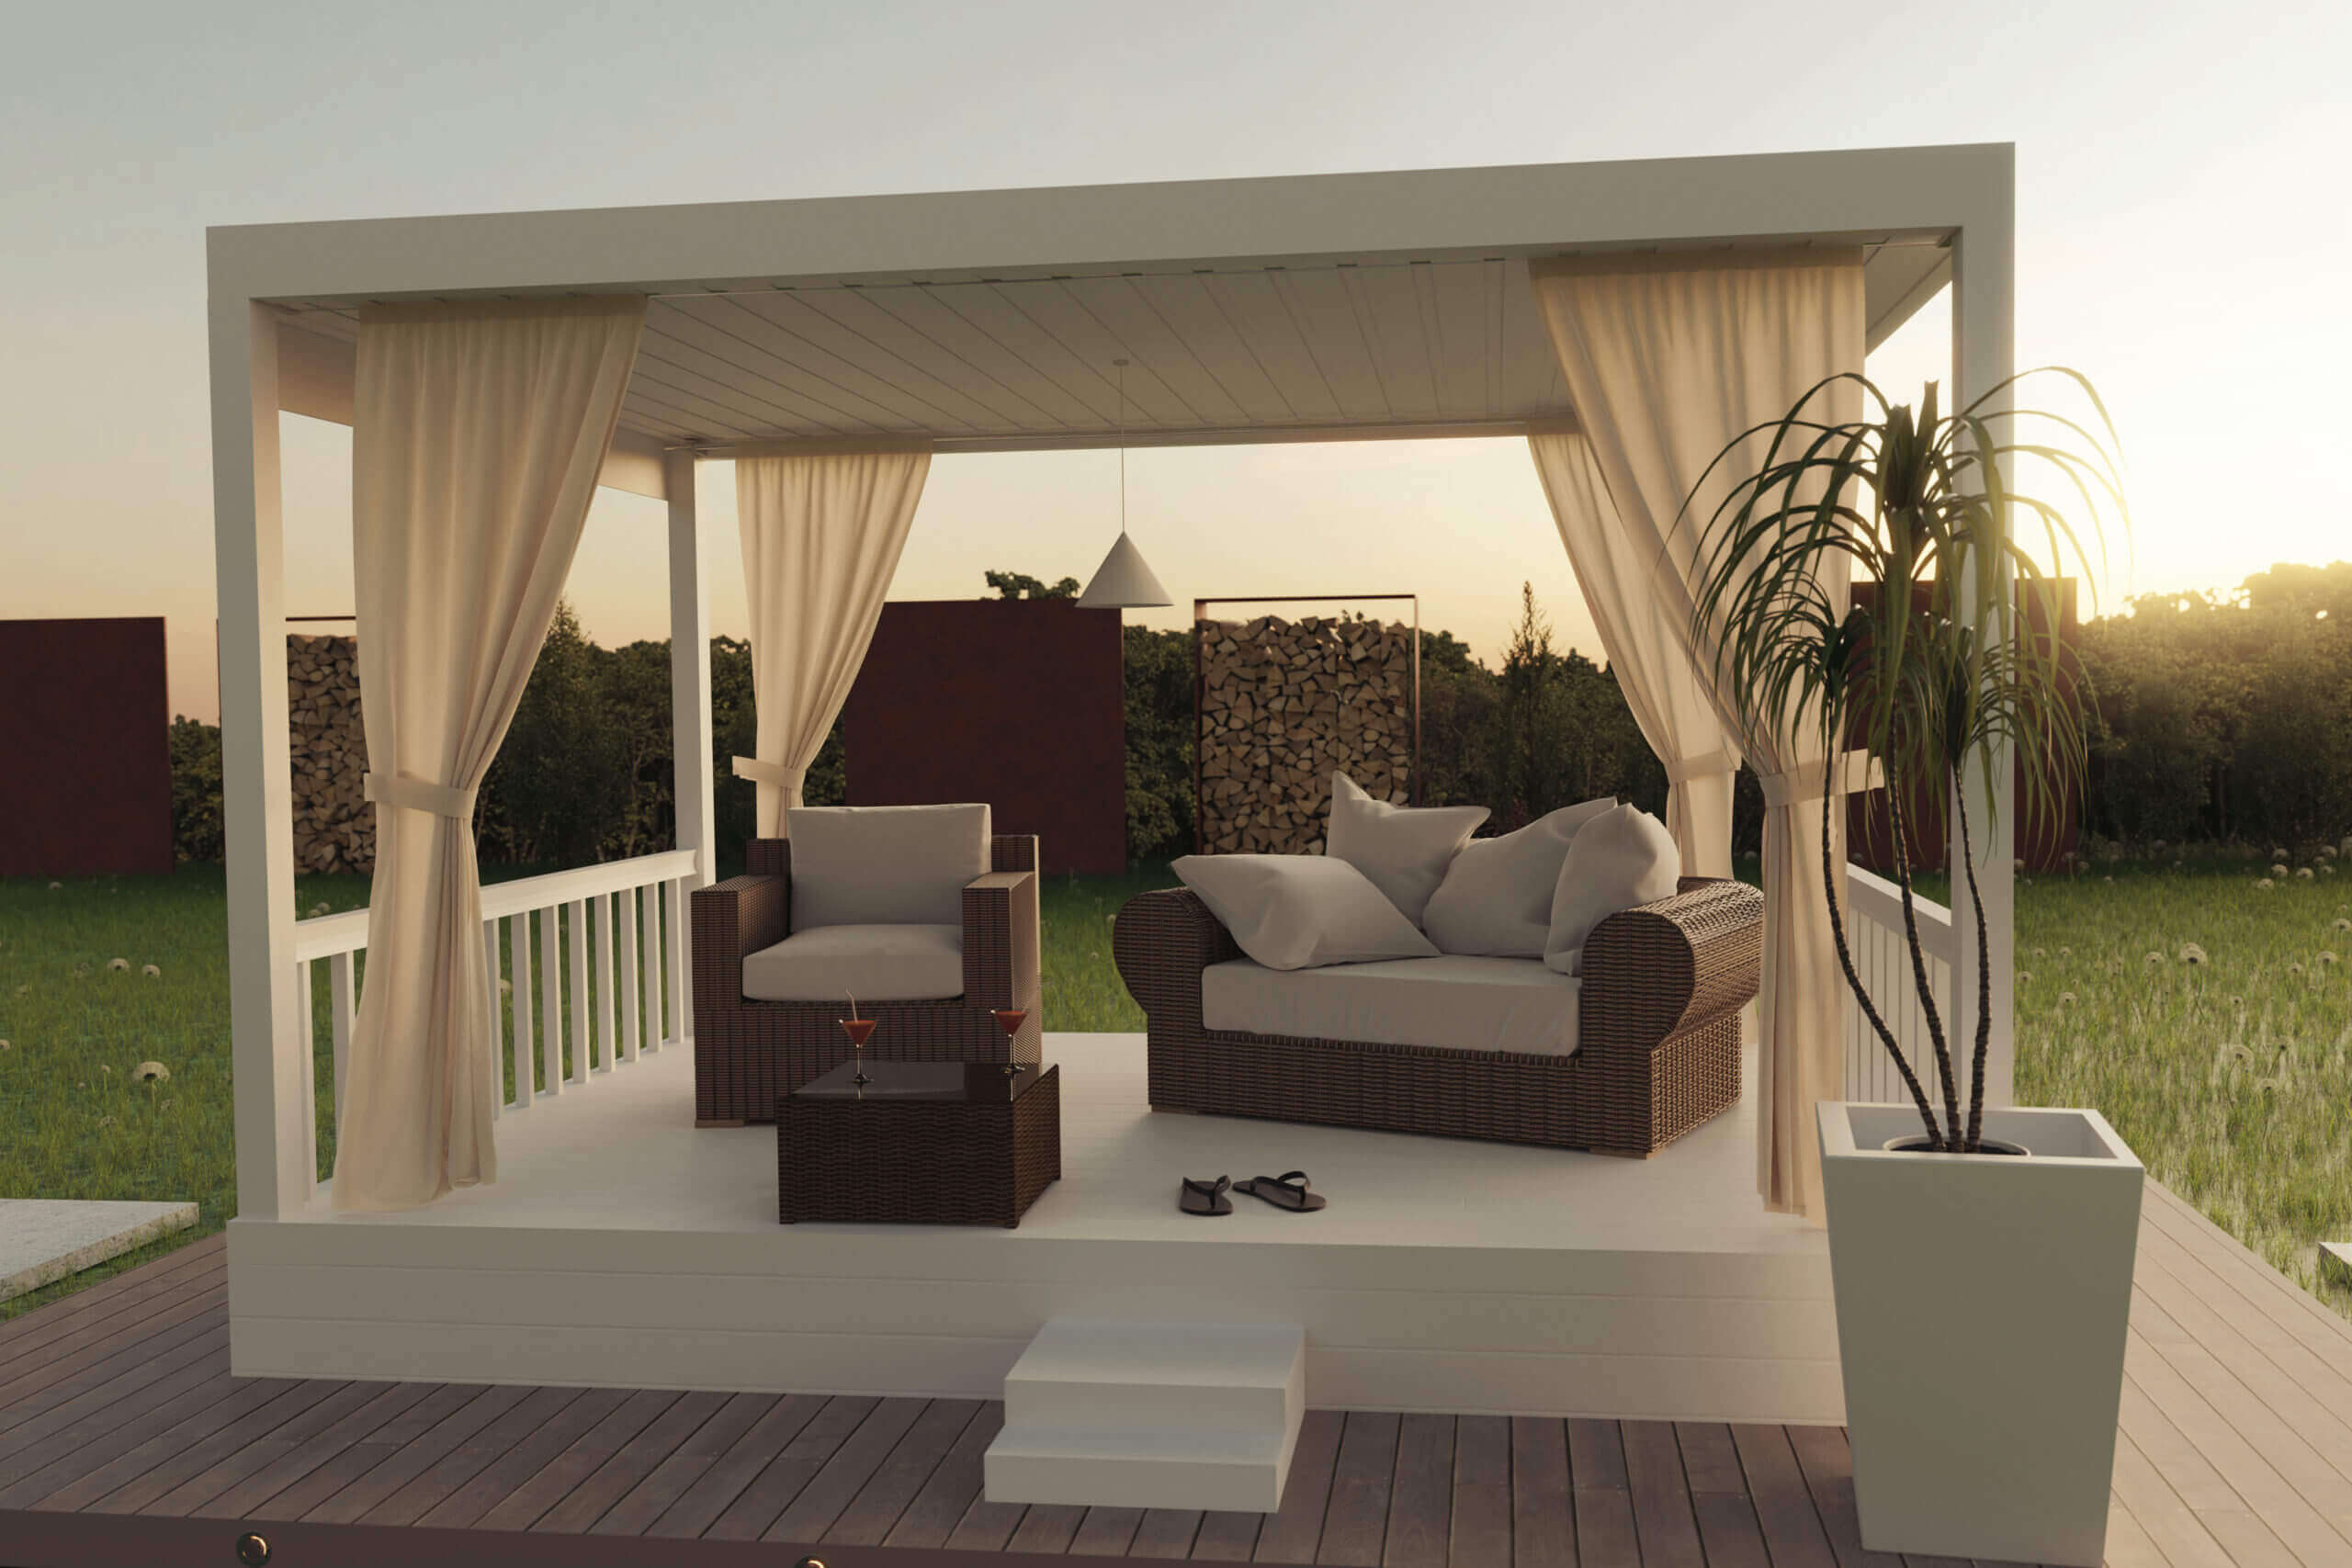 ©Brilliant Eye / Adobe Stock : Oasis de jardin : une terrasse couverte blanche et élégante avec un mobilier lounge.